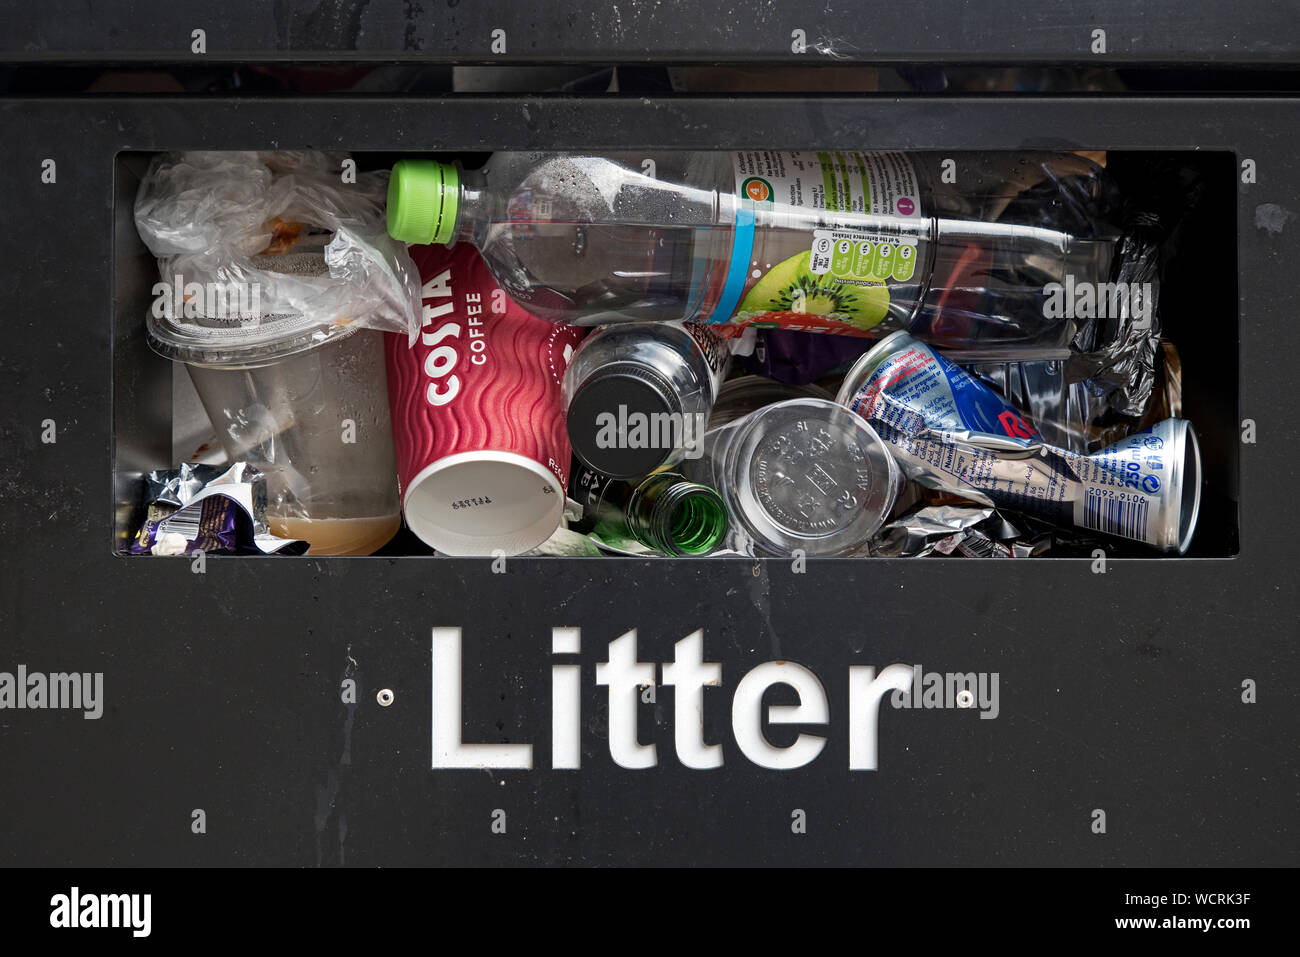 Closeup of a full litter bin in Edinburgh, Scotland, UK. Stock Photo